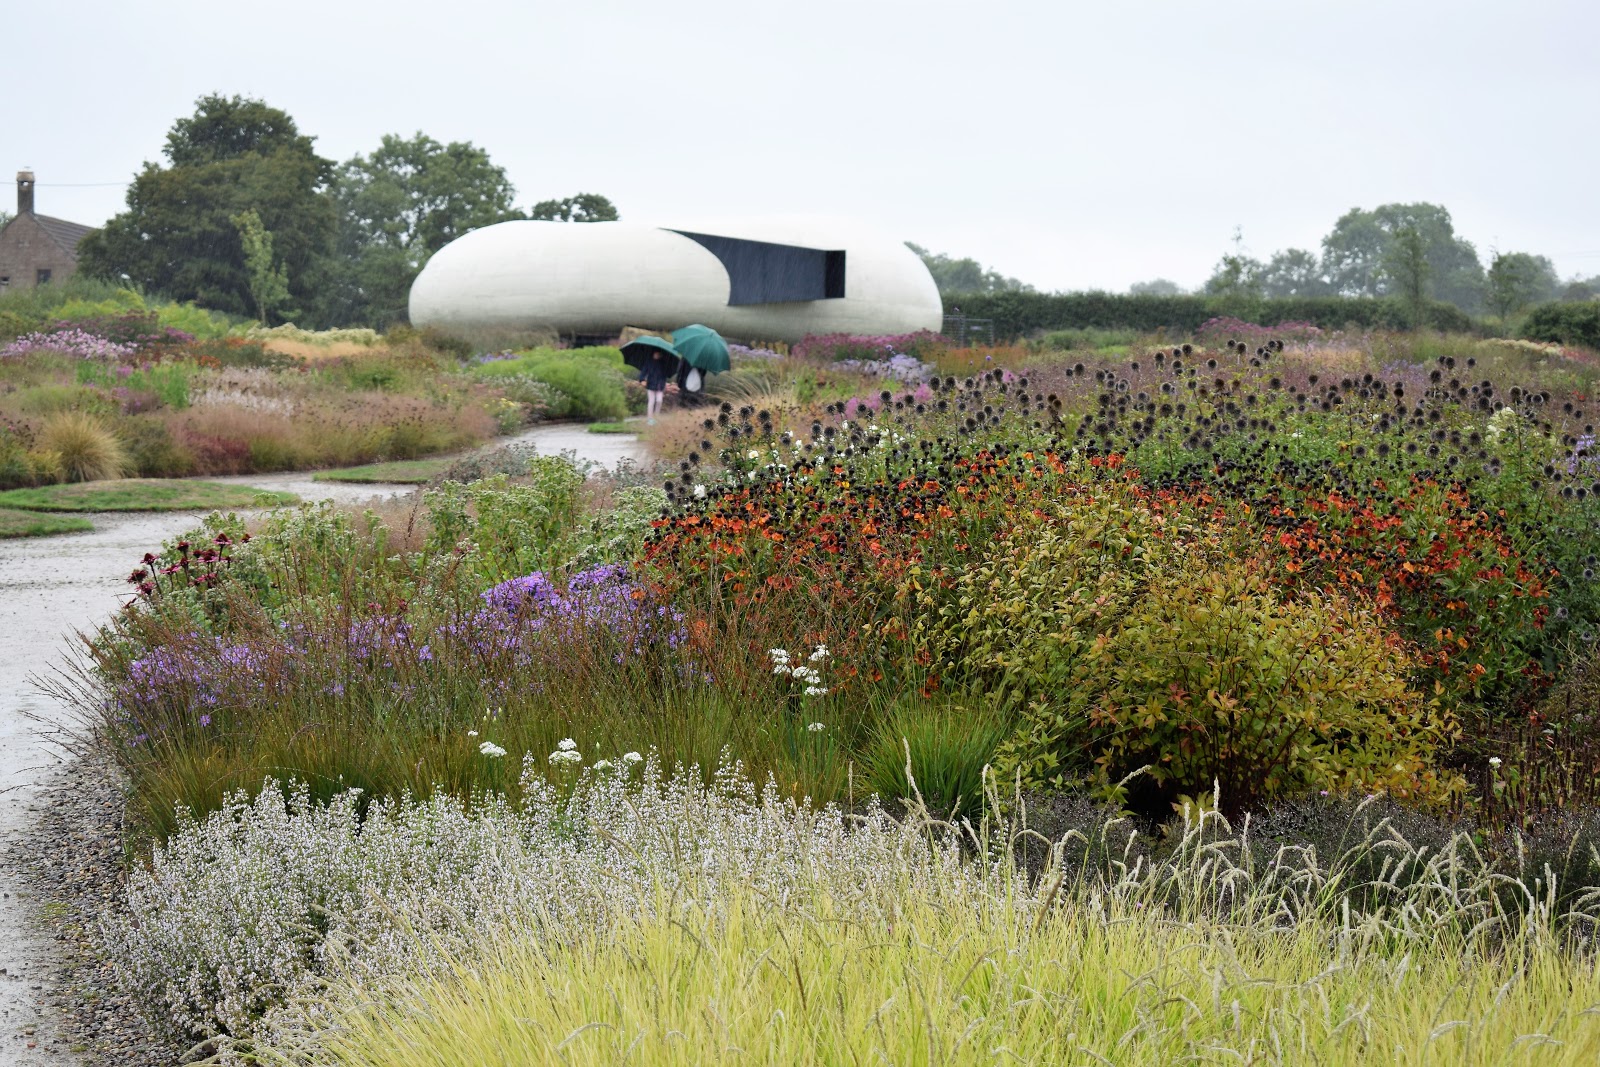 Jardín naturalista de Piet Oudolf con herbáceas vivaces y gramíneas ornamentales a finales del verano